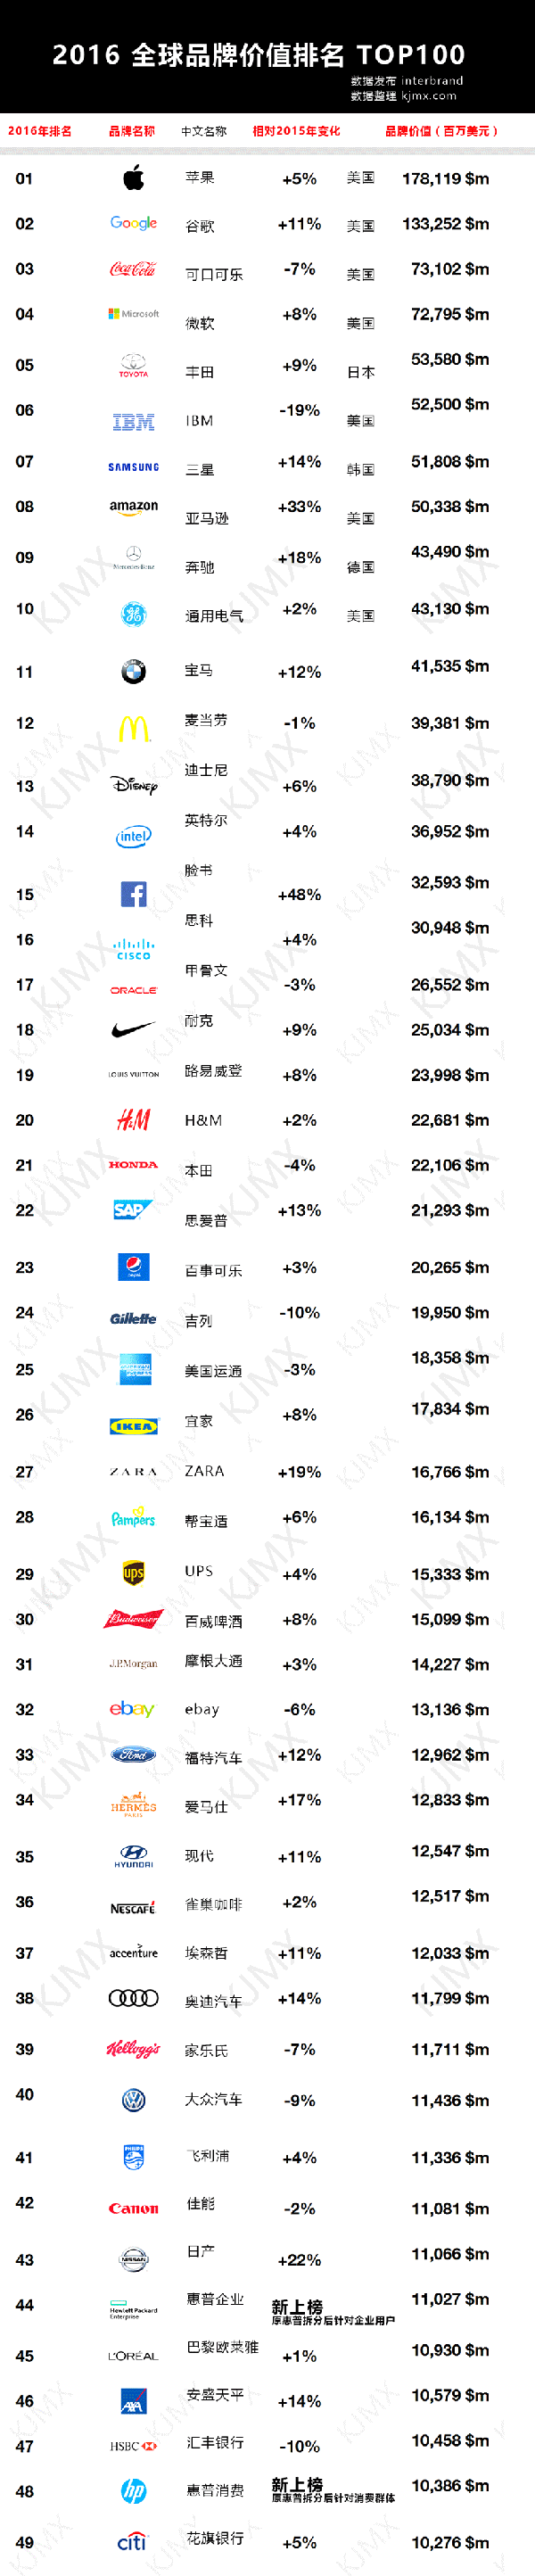 码报:【j2开奖】全球品牌排名前100 中国入围2家 你猜是谁